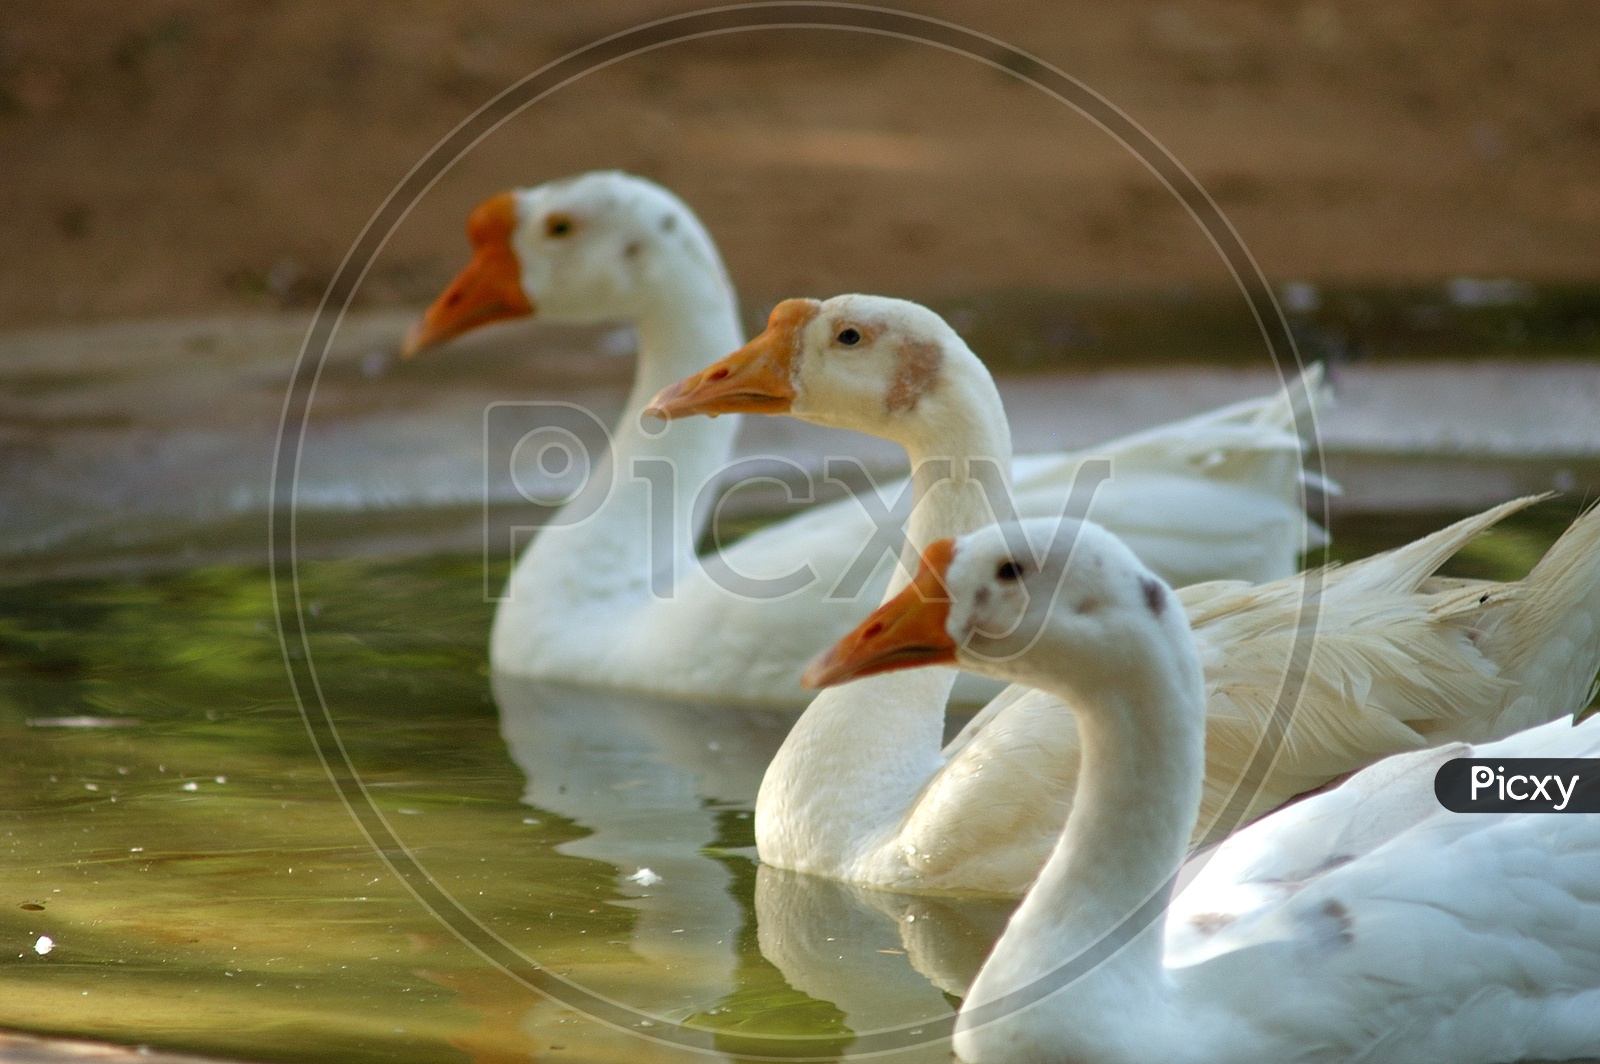 White ducks in a pond